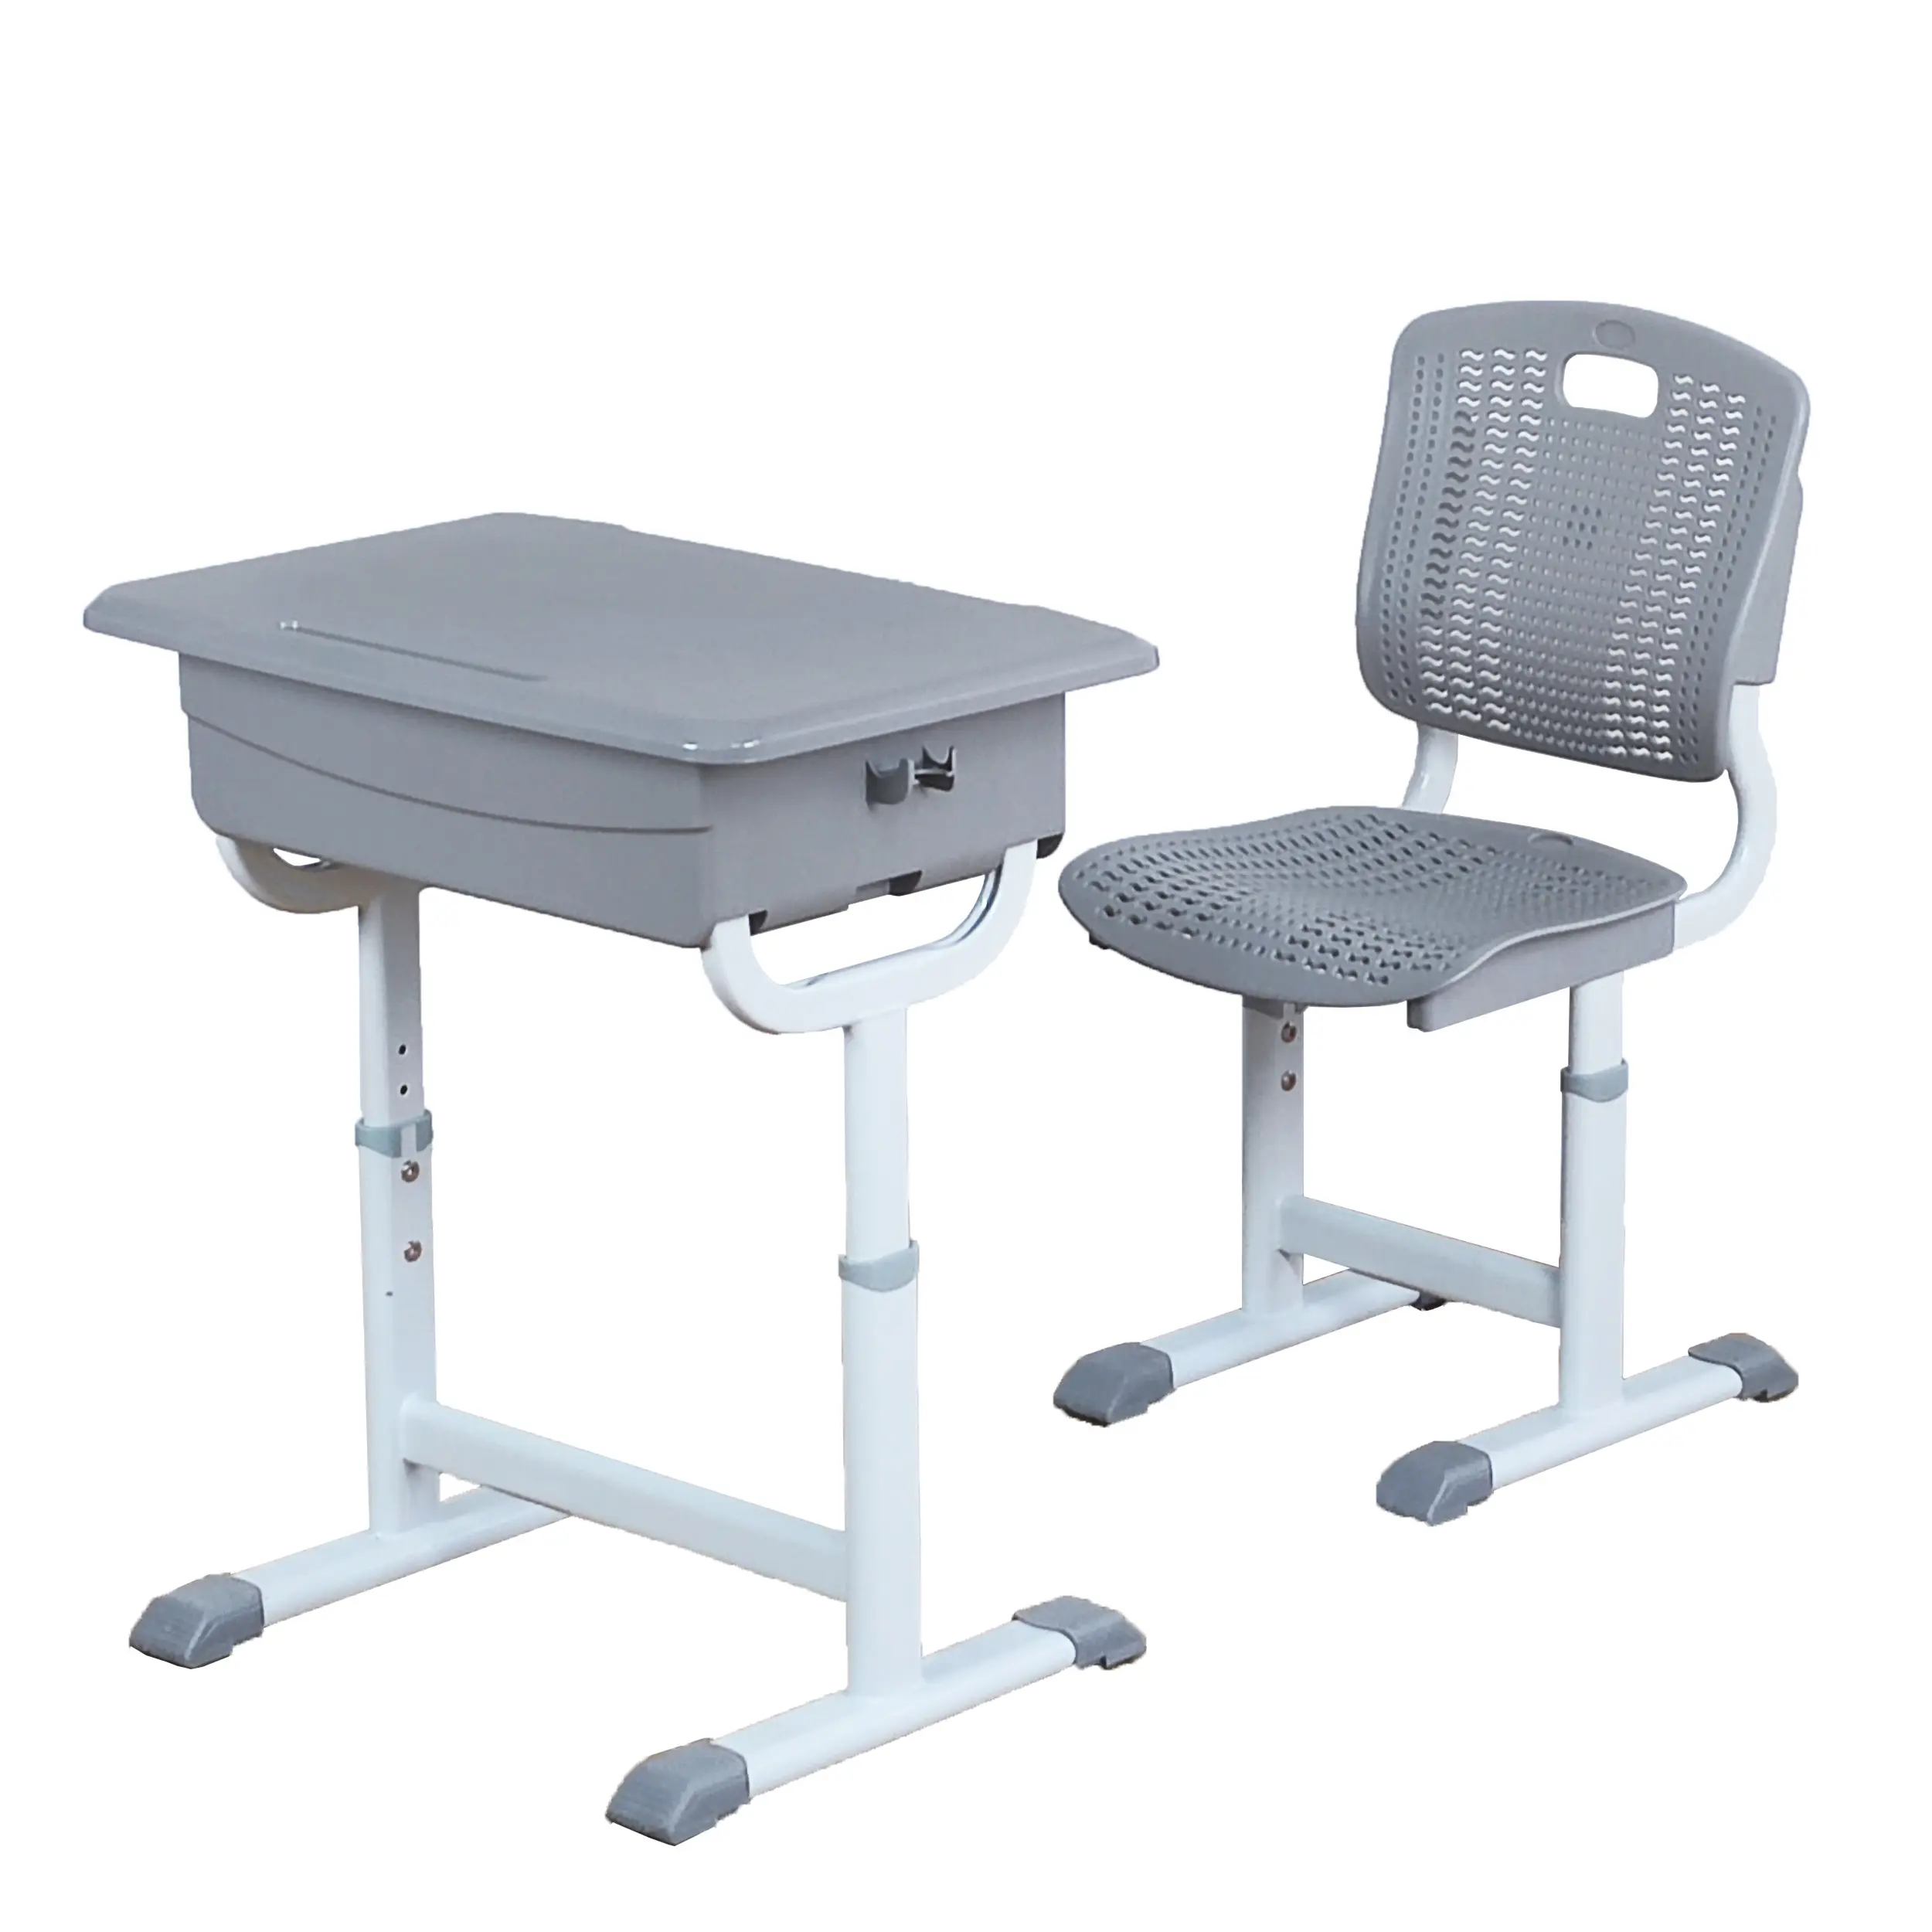 Современный PP пластиковый учебный стол, школьная мебель, оптовая продажа, регулируемые по высоте школьные столы и стулья